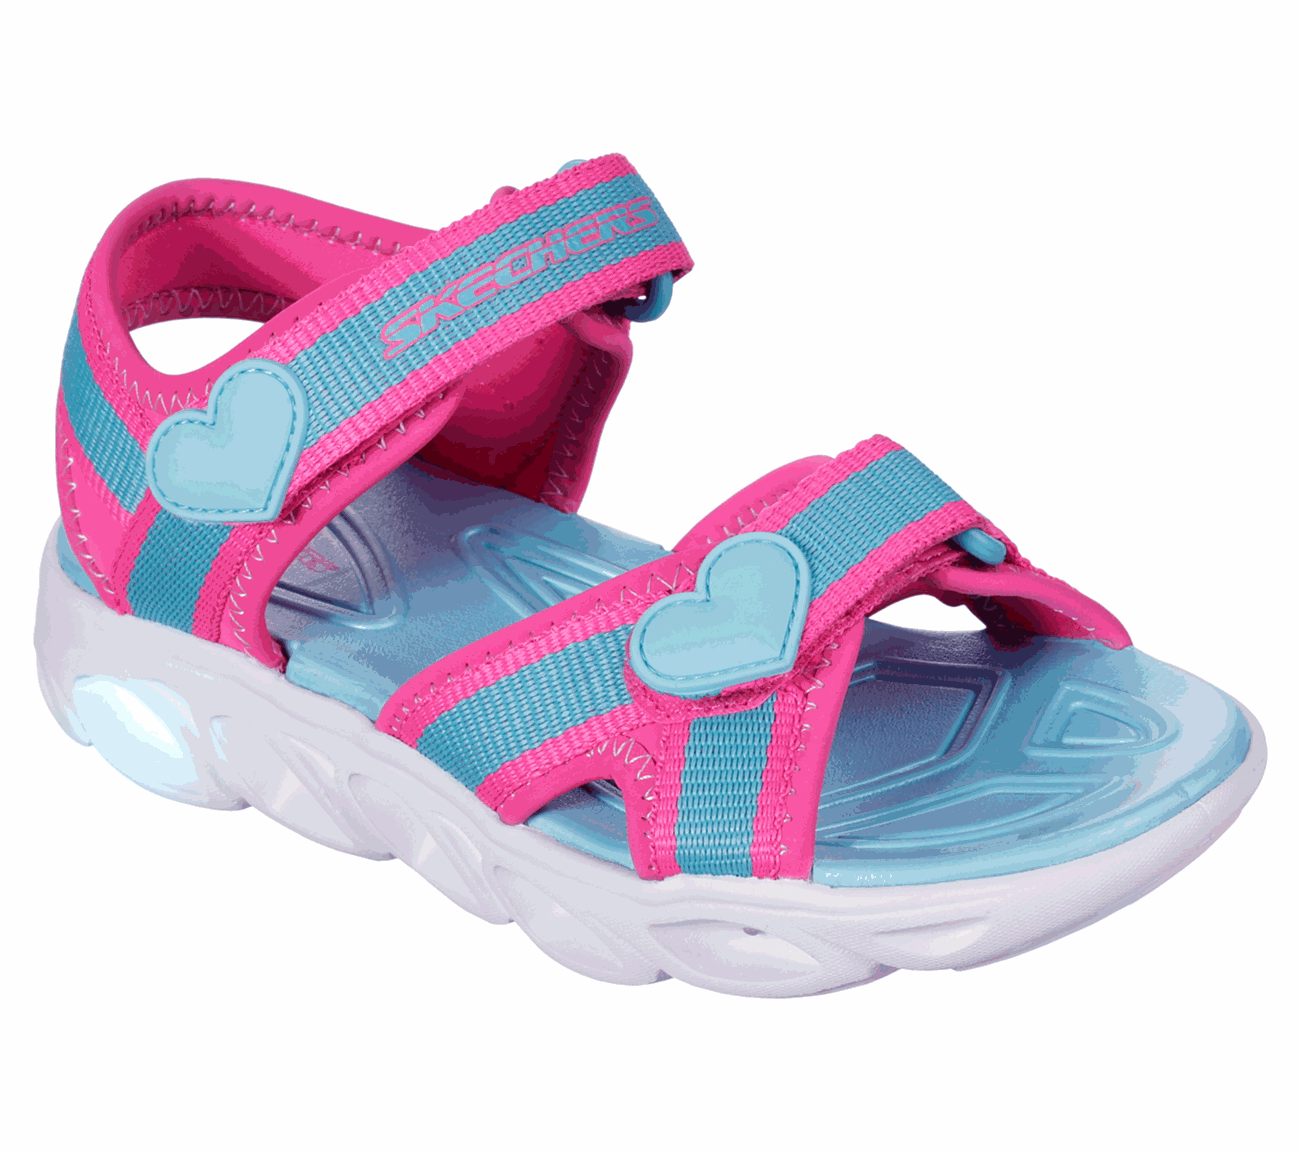 Splash Zooms SKECHERS S-Lights Shoes